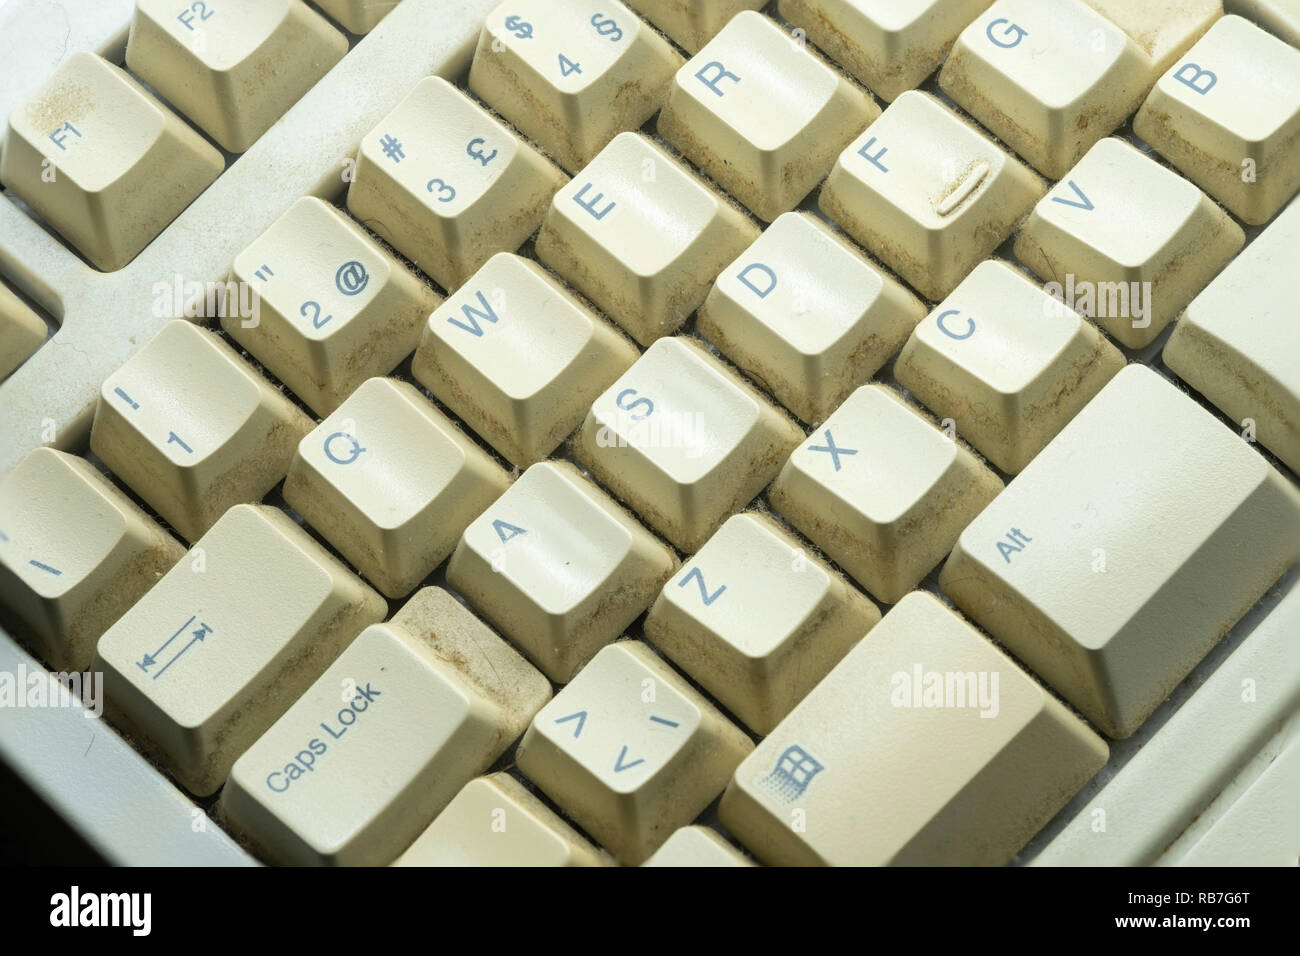 Sale vieux clavier d'ordinateur Photo Stock - Alamy